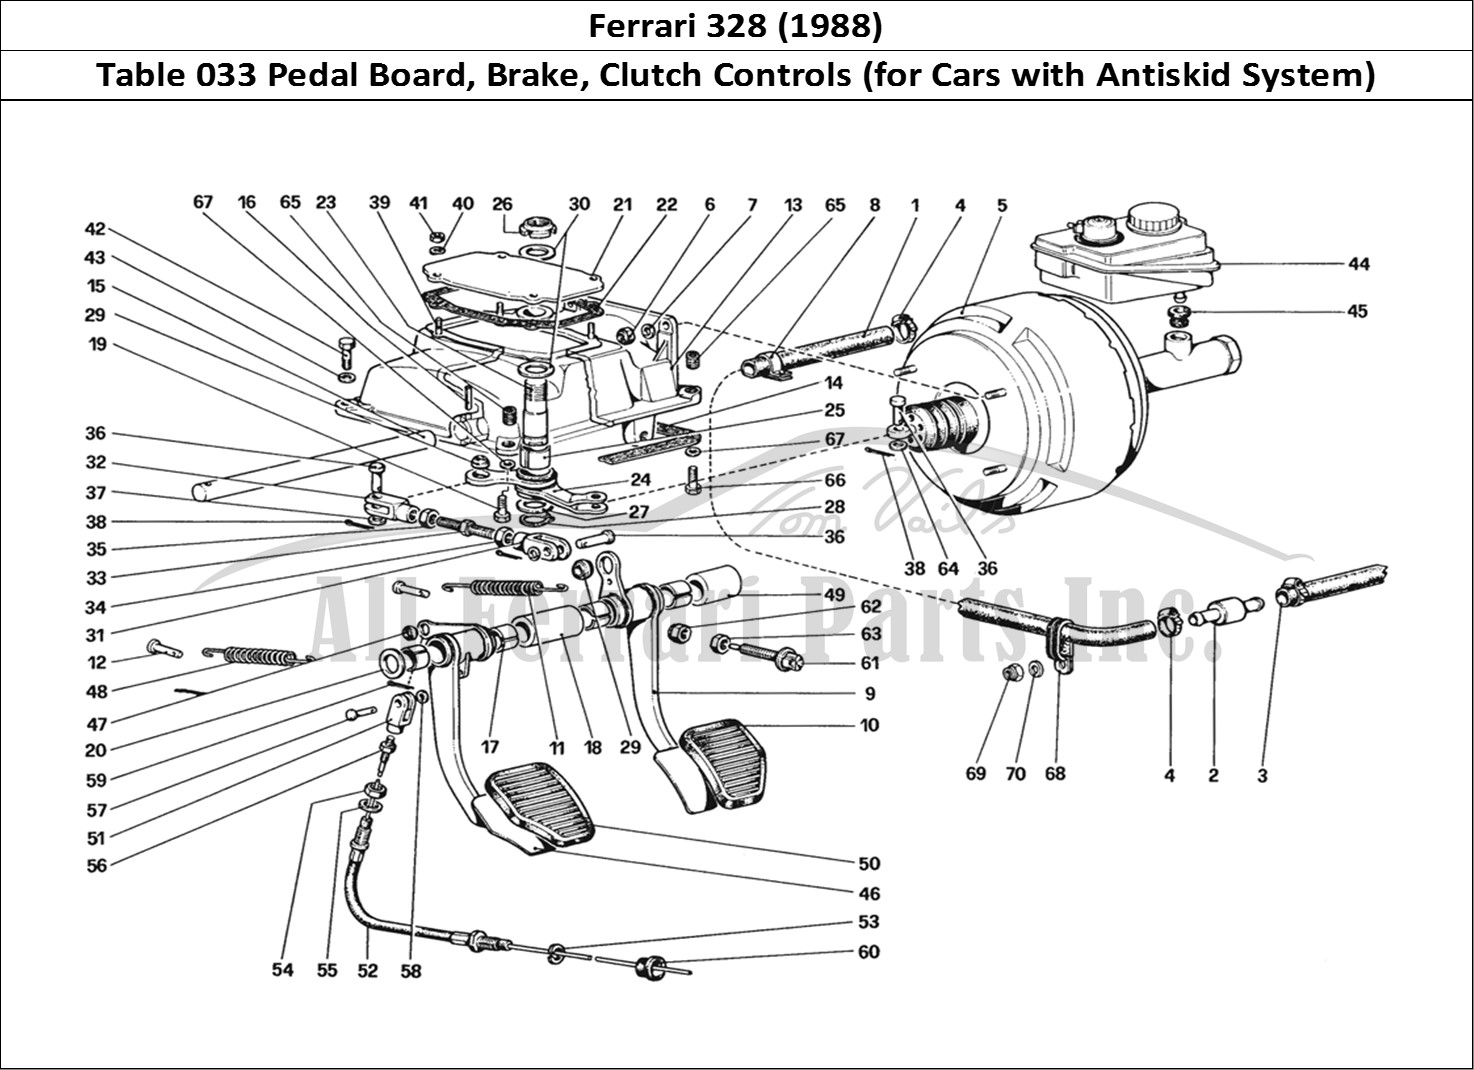 Ferrari Parts Ferrari 328 (1988) Page 033 Pedal Board - Brake and C